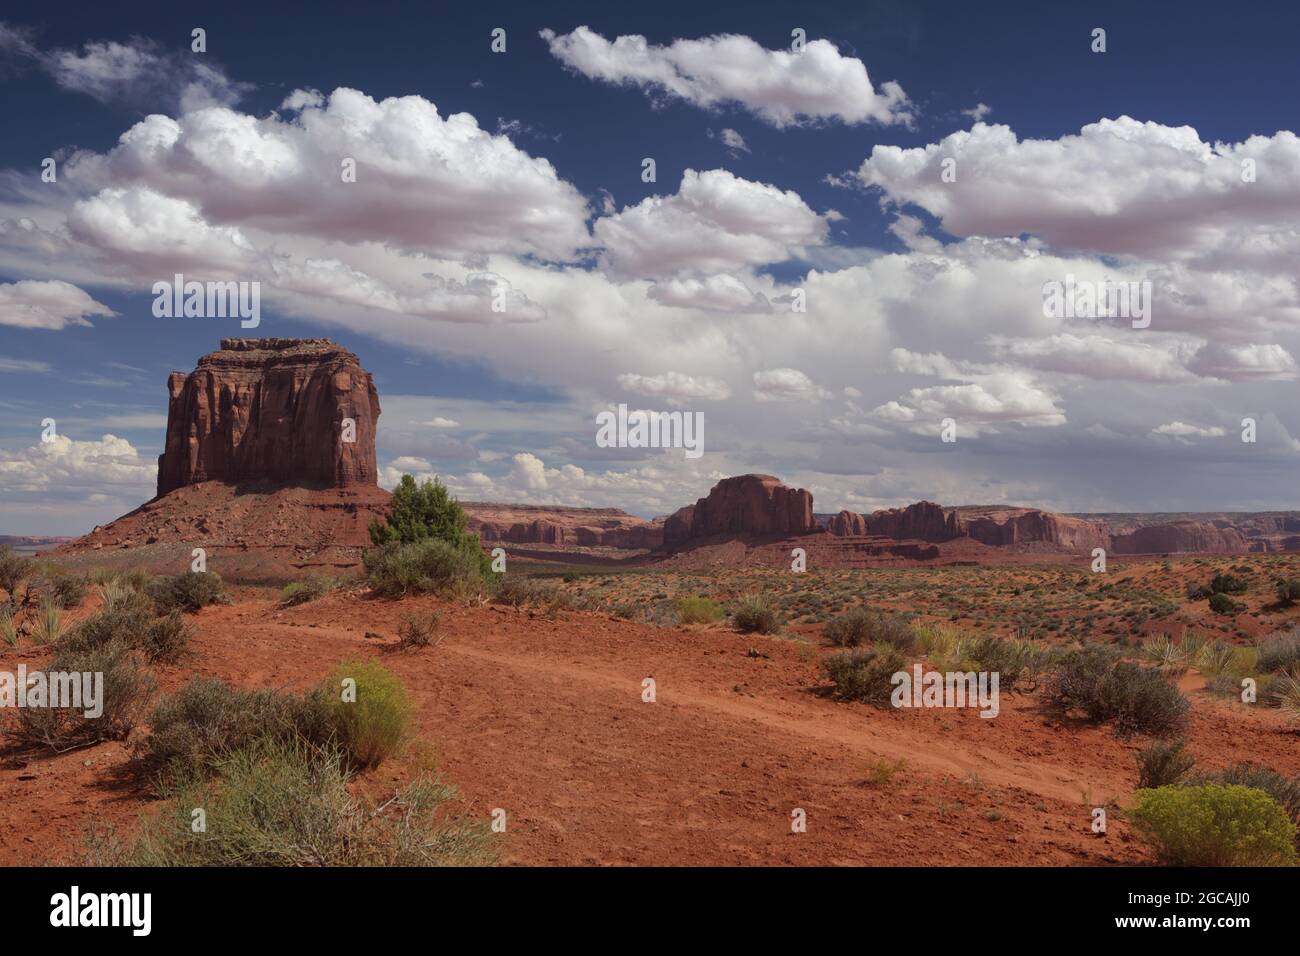 Roter Sandstein Merrick Butte und Klippen im Monument Valley Navajo Tribal Park mit Ökosystempflanzen im Vordergrund Stockfoto